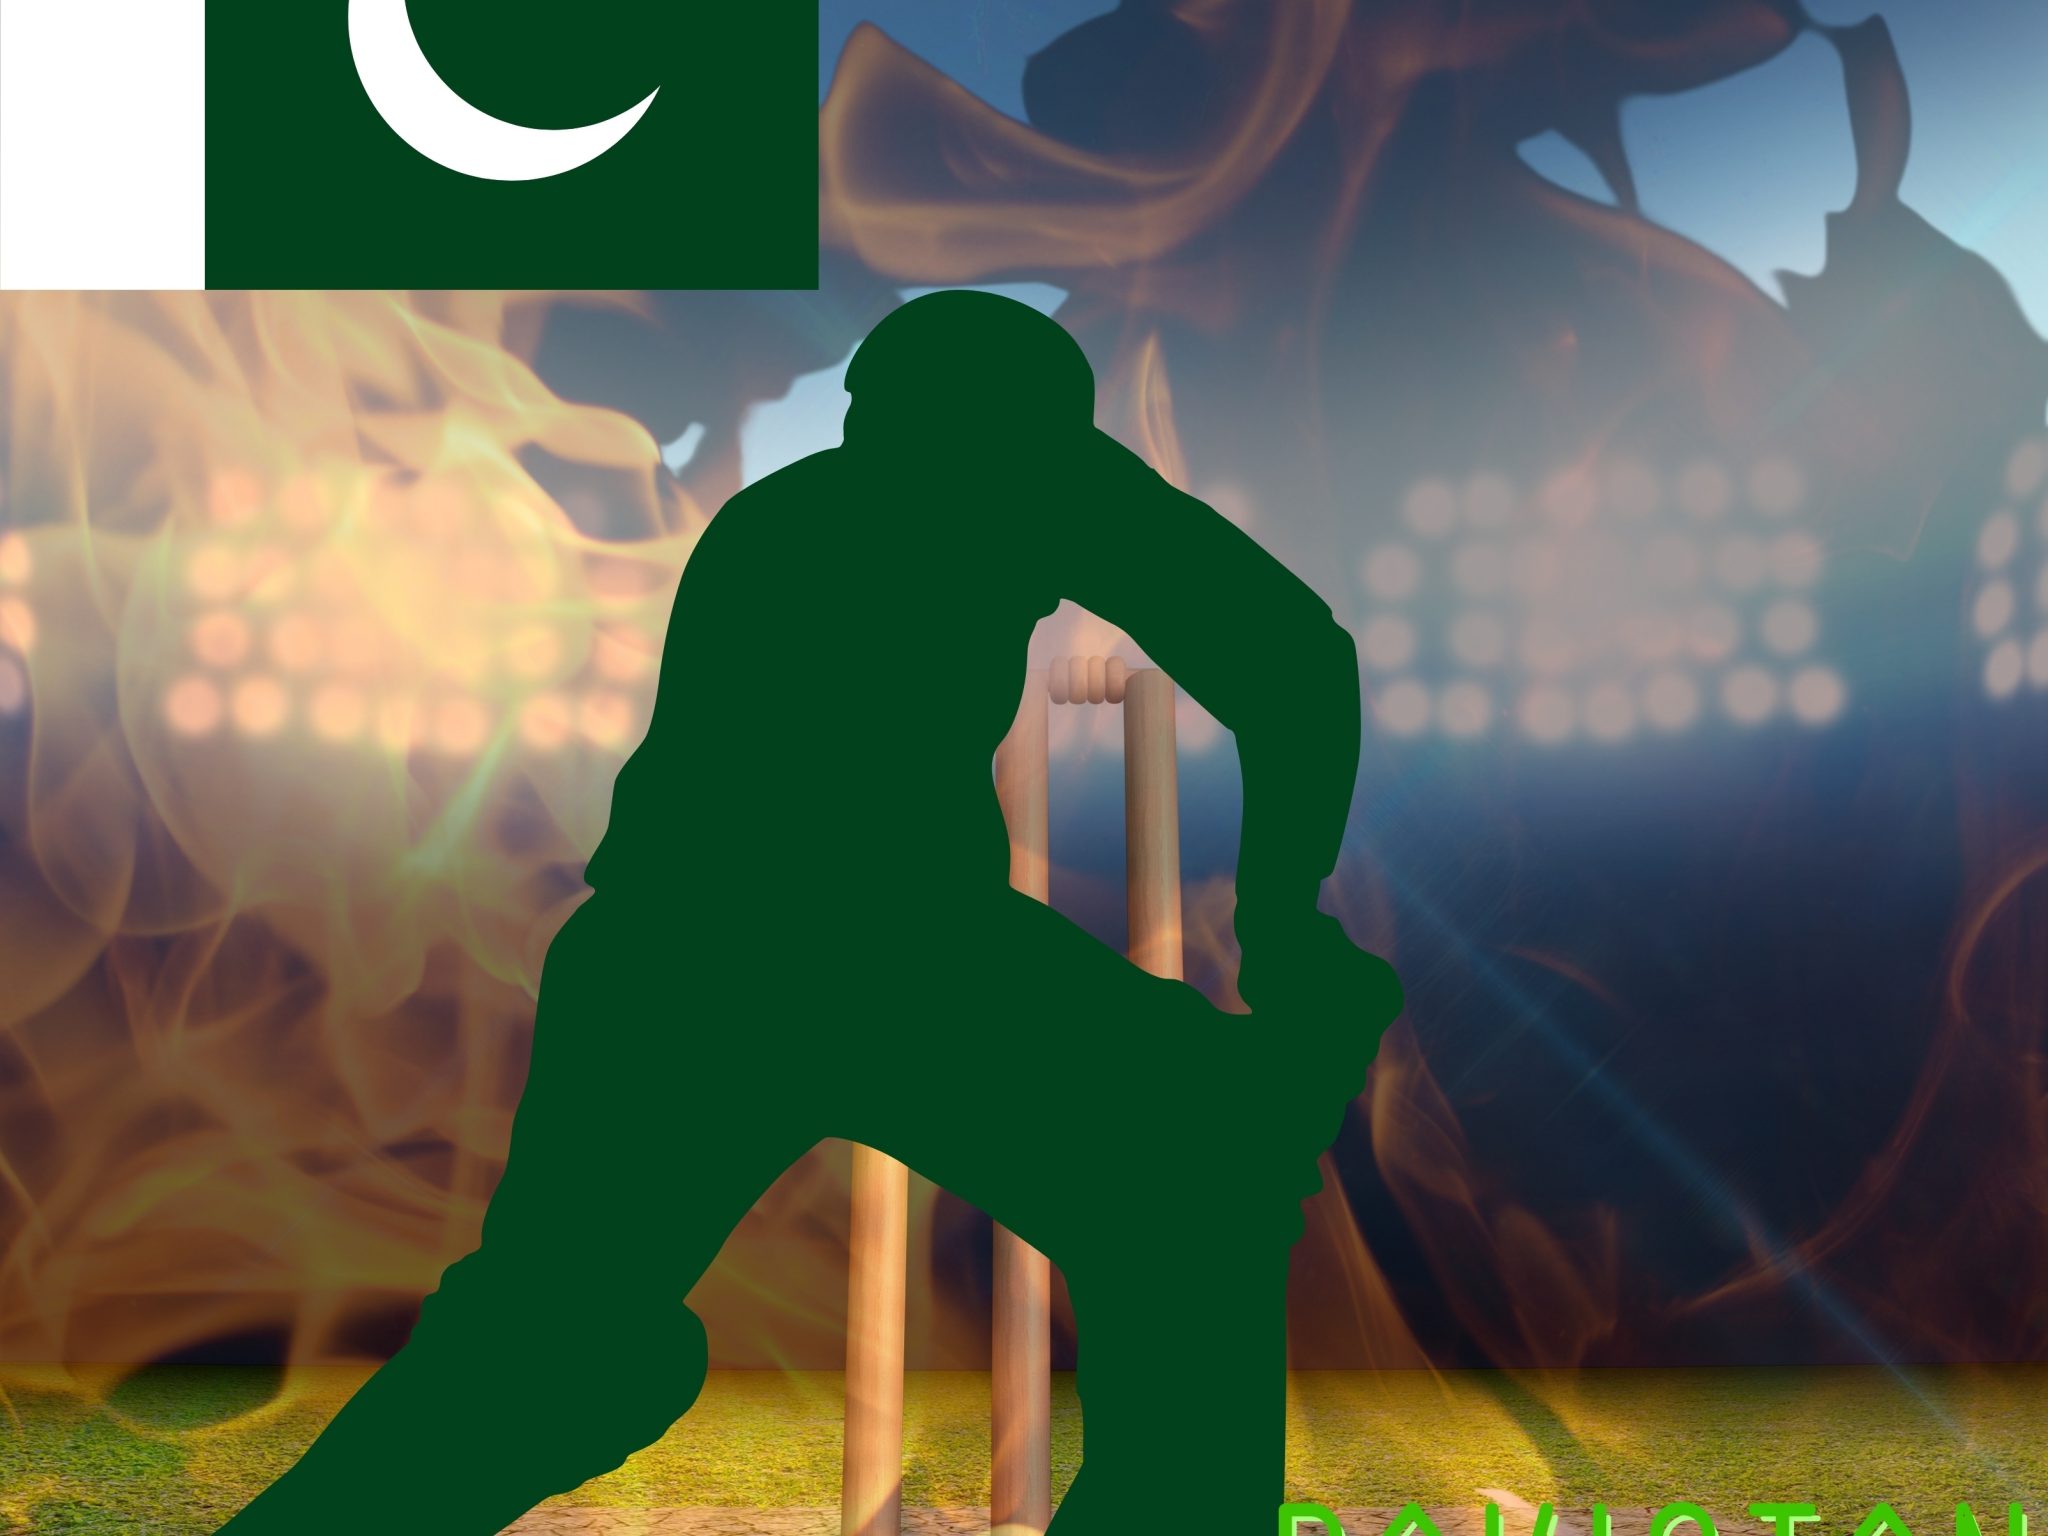 2048x1536 wallpaper Pakistan Cricket Stadium iPad Wallpaper 2048x1536 pixels resolution